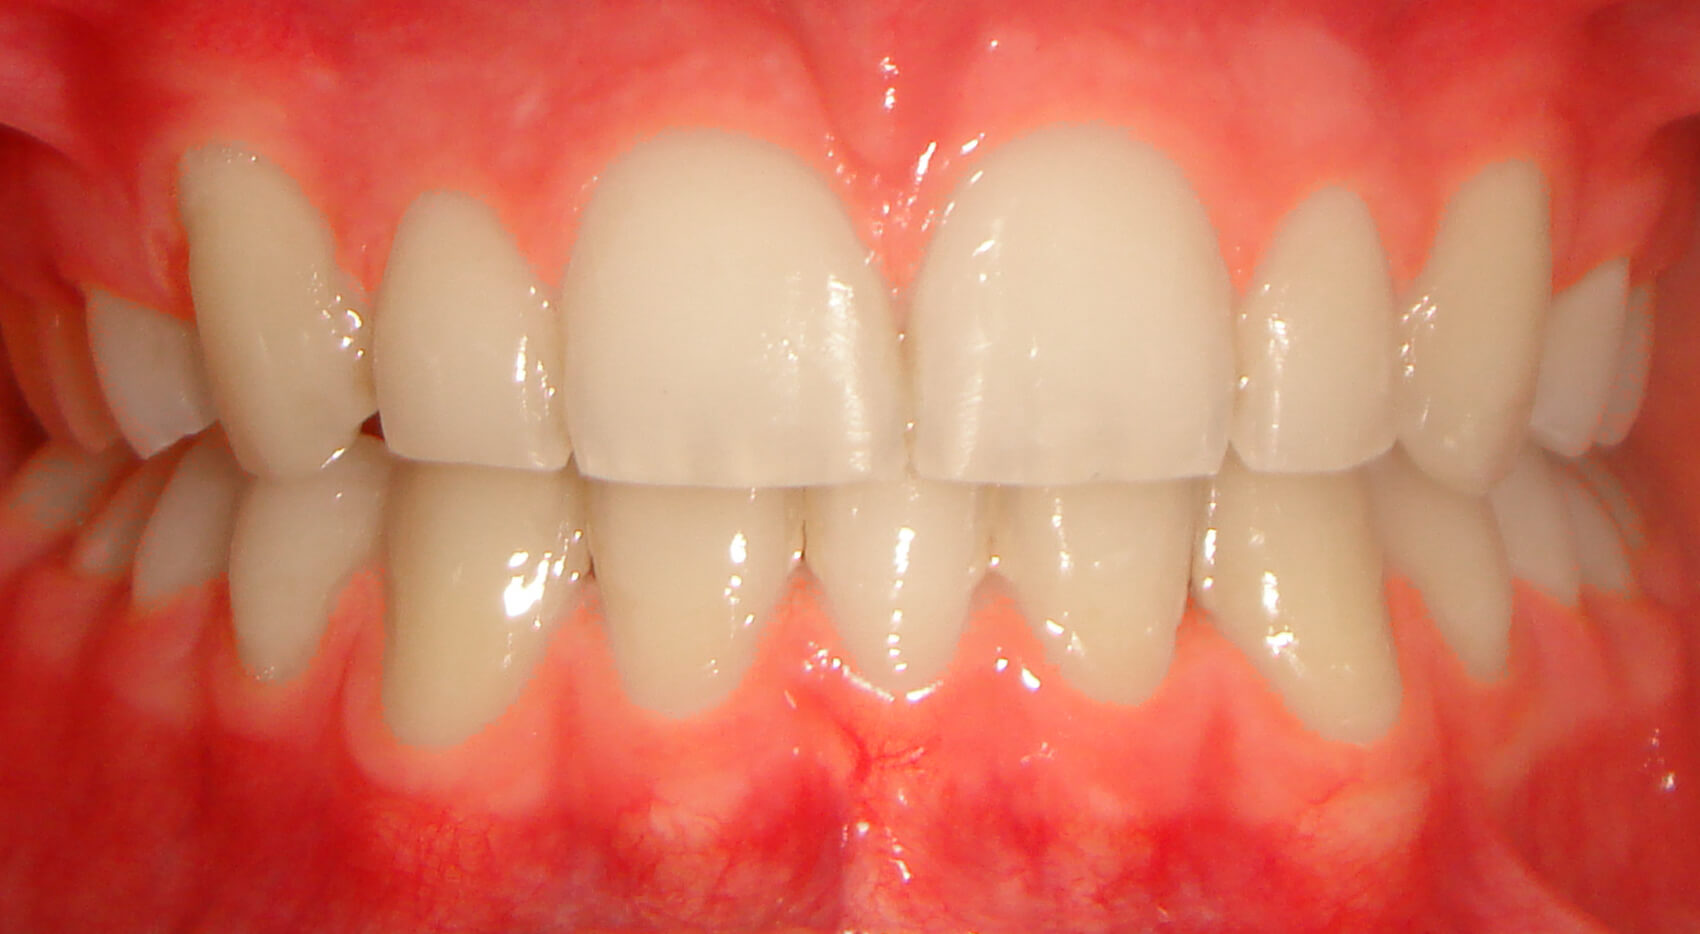 Ortodontia - Sobremordida, retroinclinação